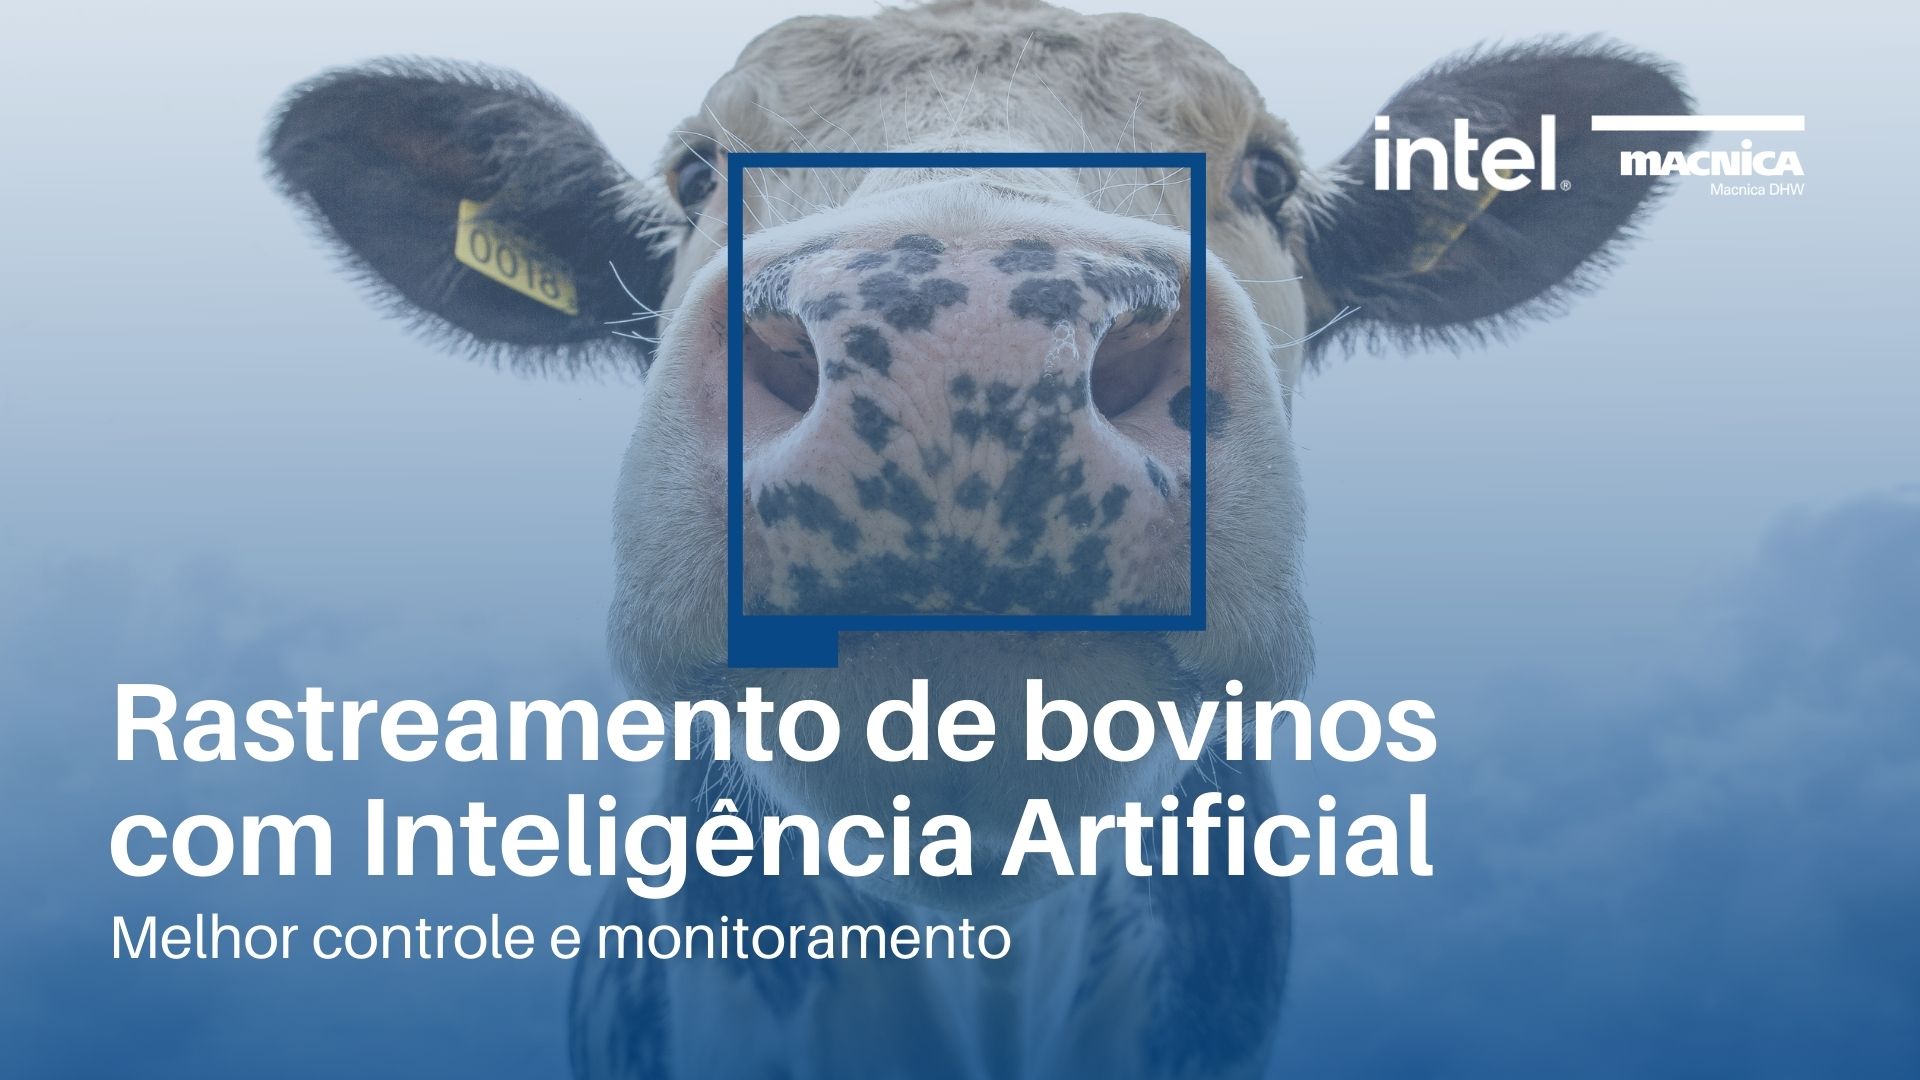 Rastreamento de bovinos com Inteligência Artificial: Melhor controle e monitoramento